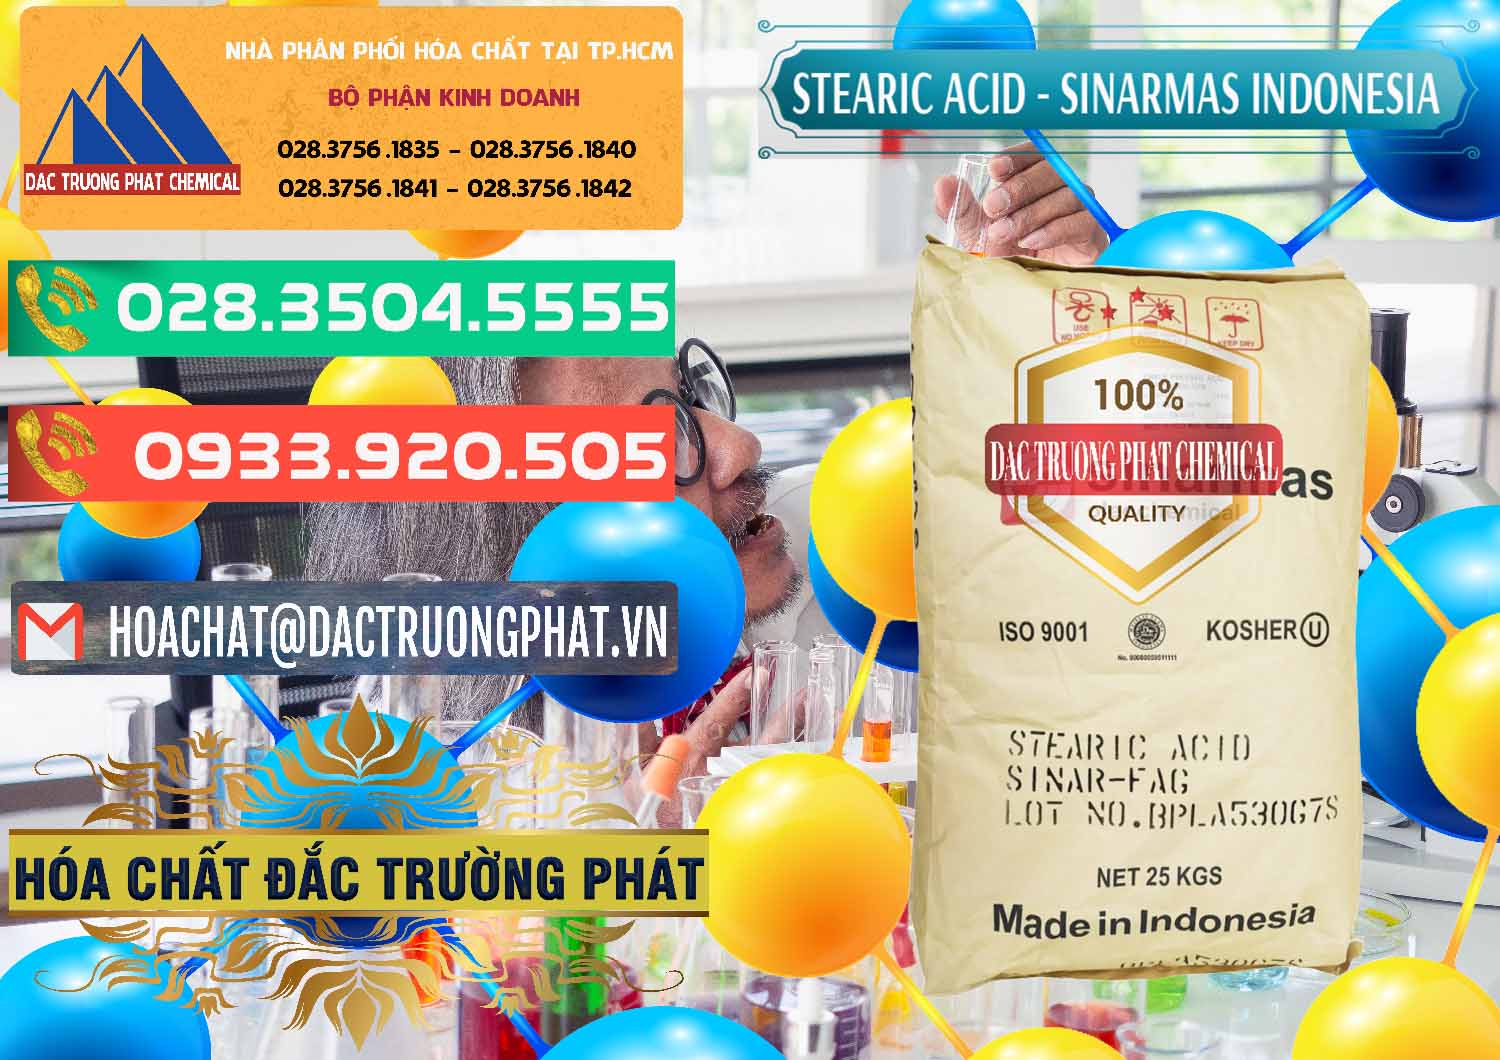 Nơi chuyên phân phối ( bán ) Axit Stearic - Stearic Acid Sinarmas Indonesia - 0389 - Nhà nhập khẩu - phân phối hóa chất tại TP.HCM - congtyhoachat.com.vn